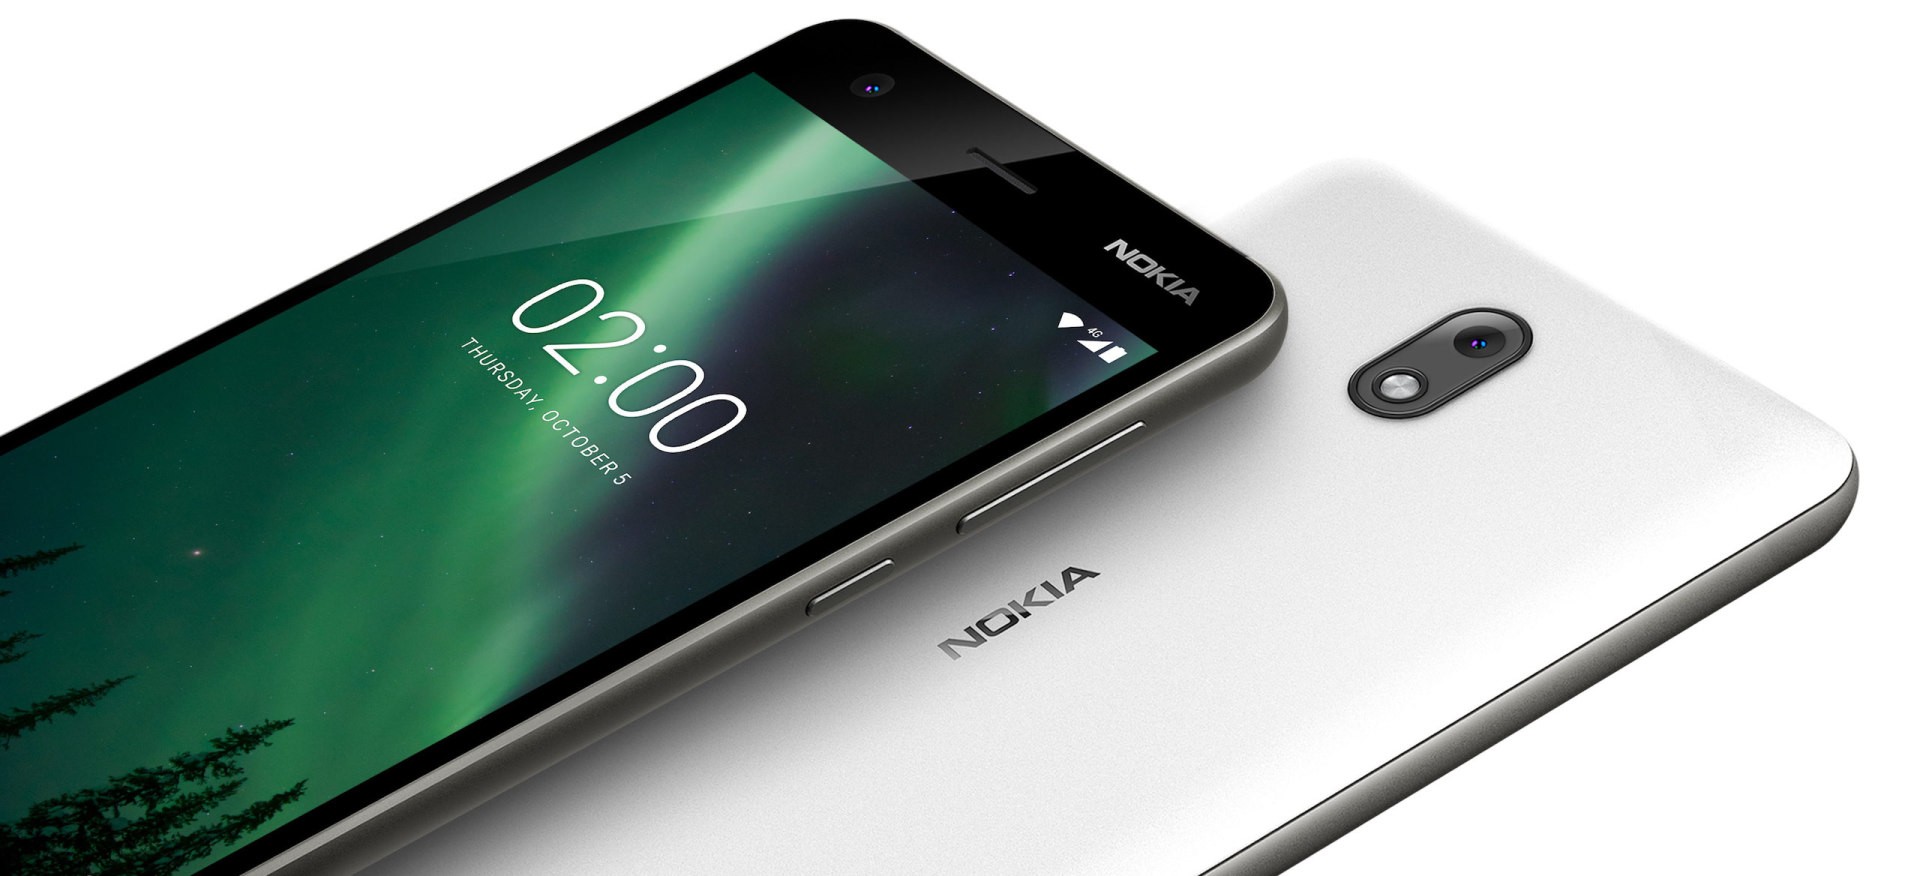 Nokia Mobile